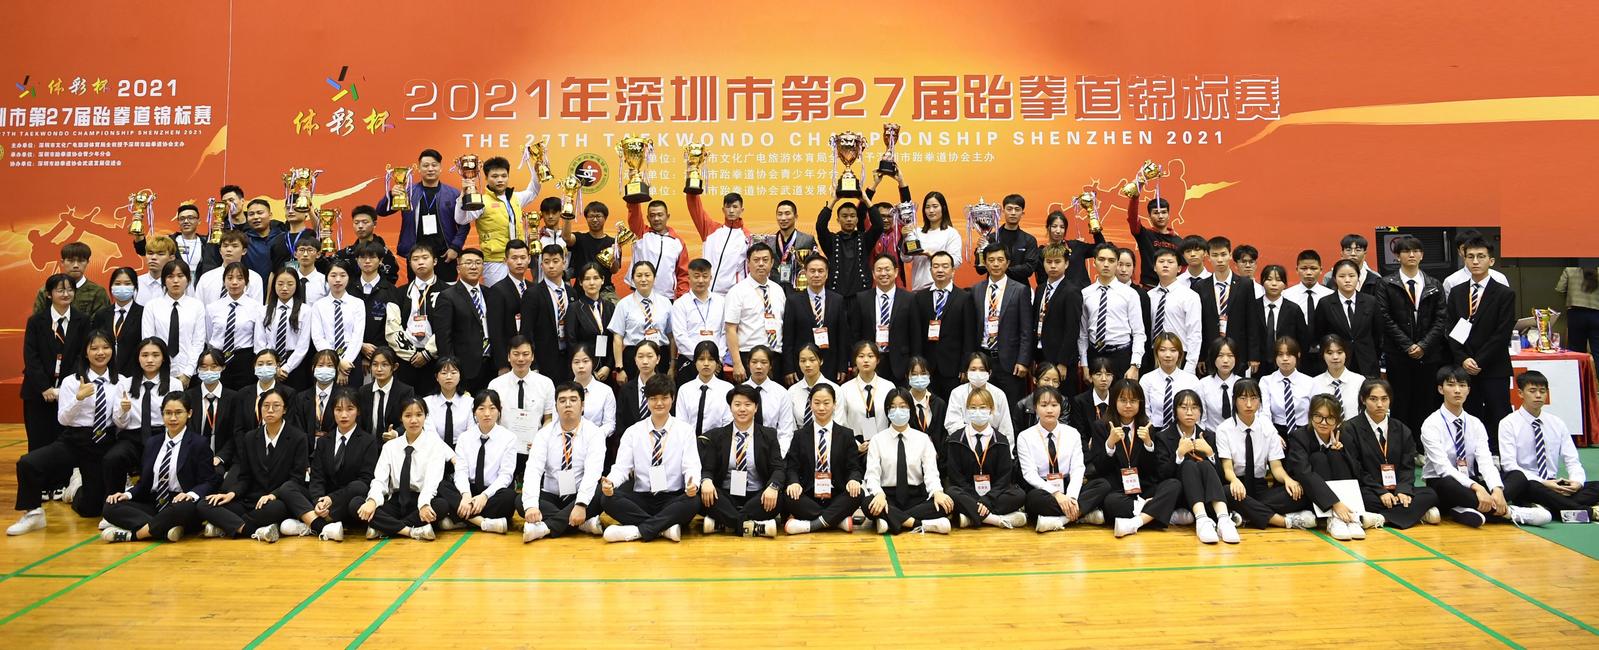 2021年深圳市第27届跆拳道锦标赛圆满结束